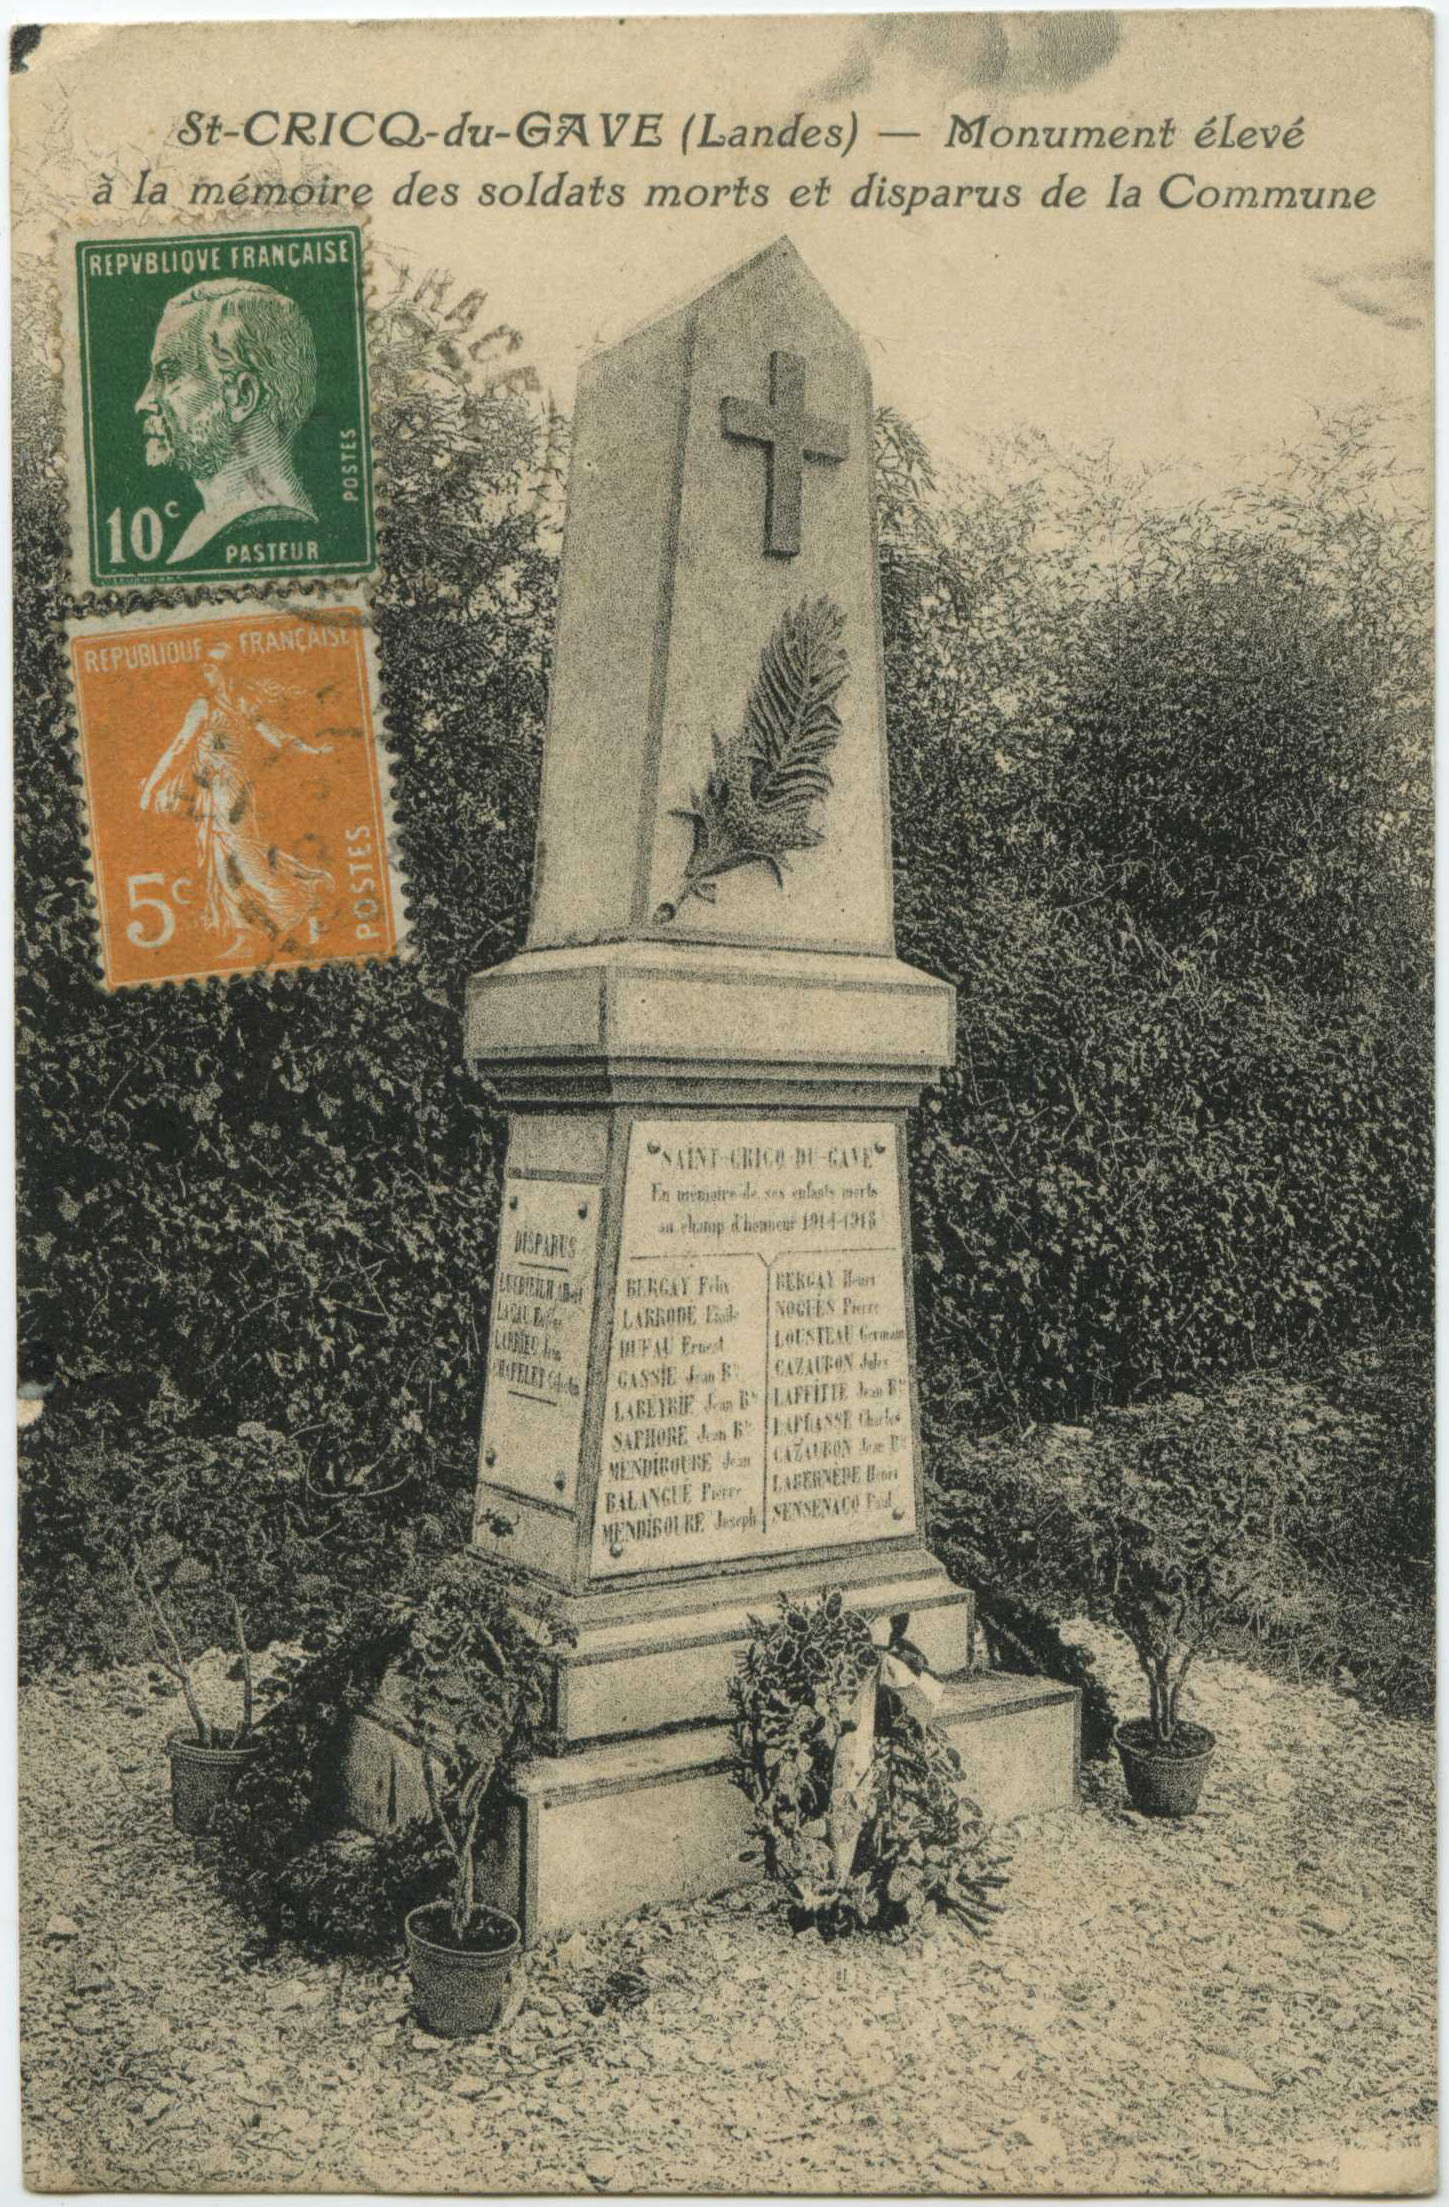 Saint-Cricq-du-Gave - Monument élevé à la mémoire des soldats morts et disparus de la Commune